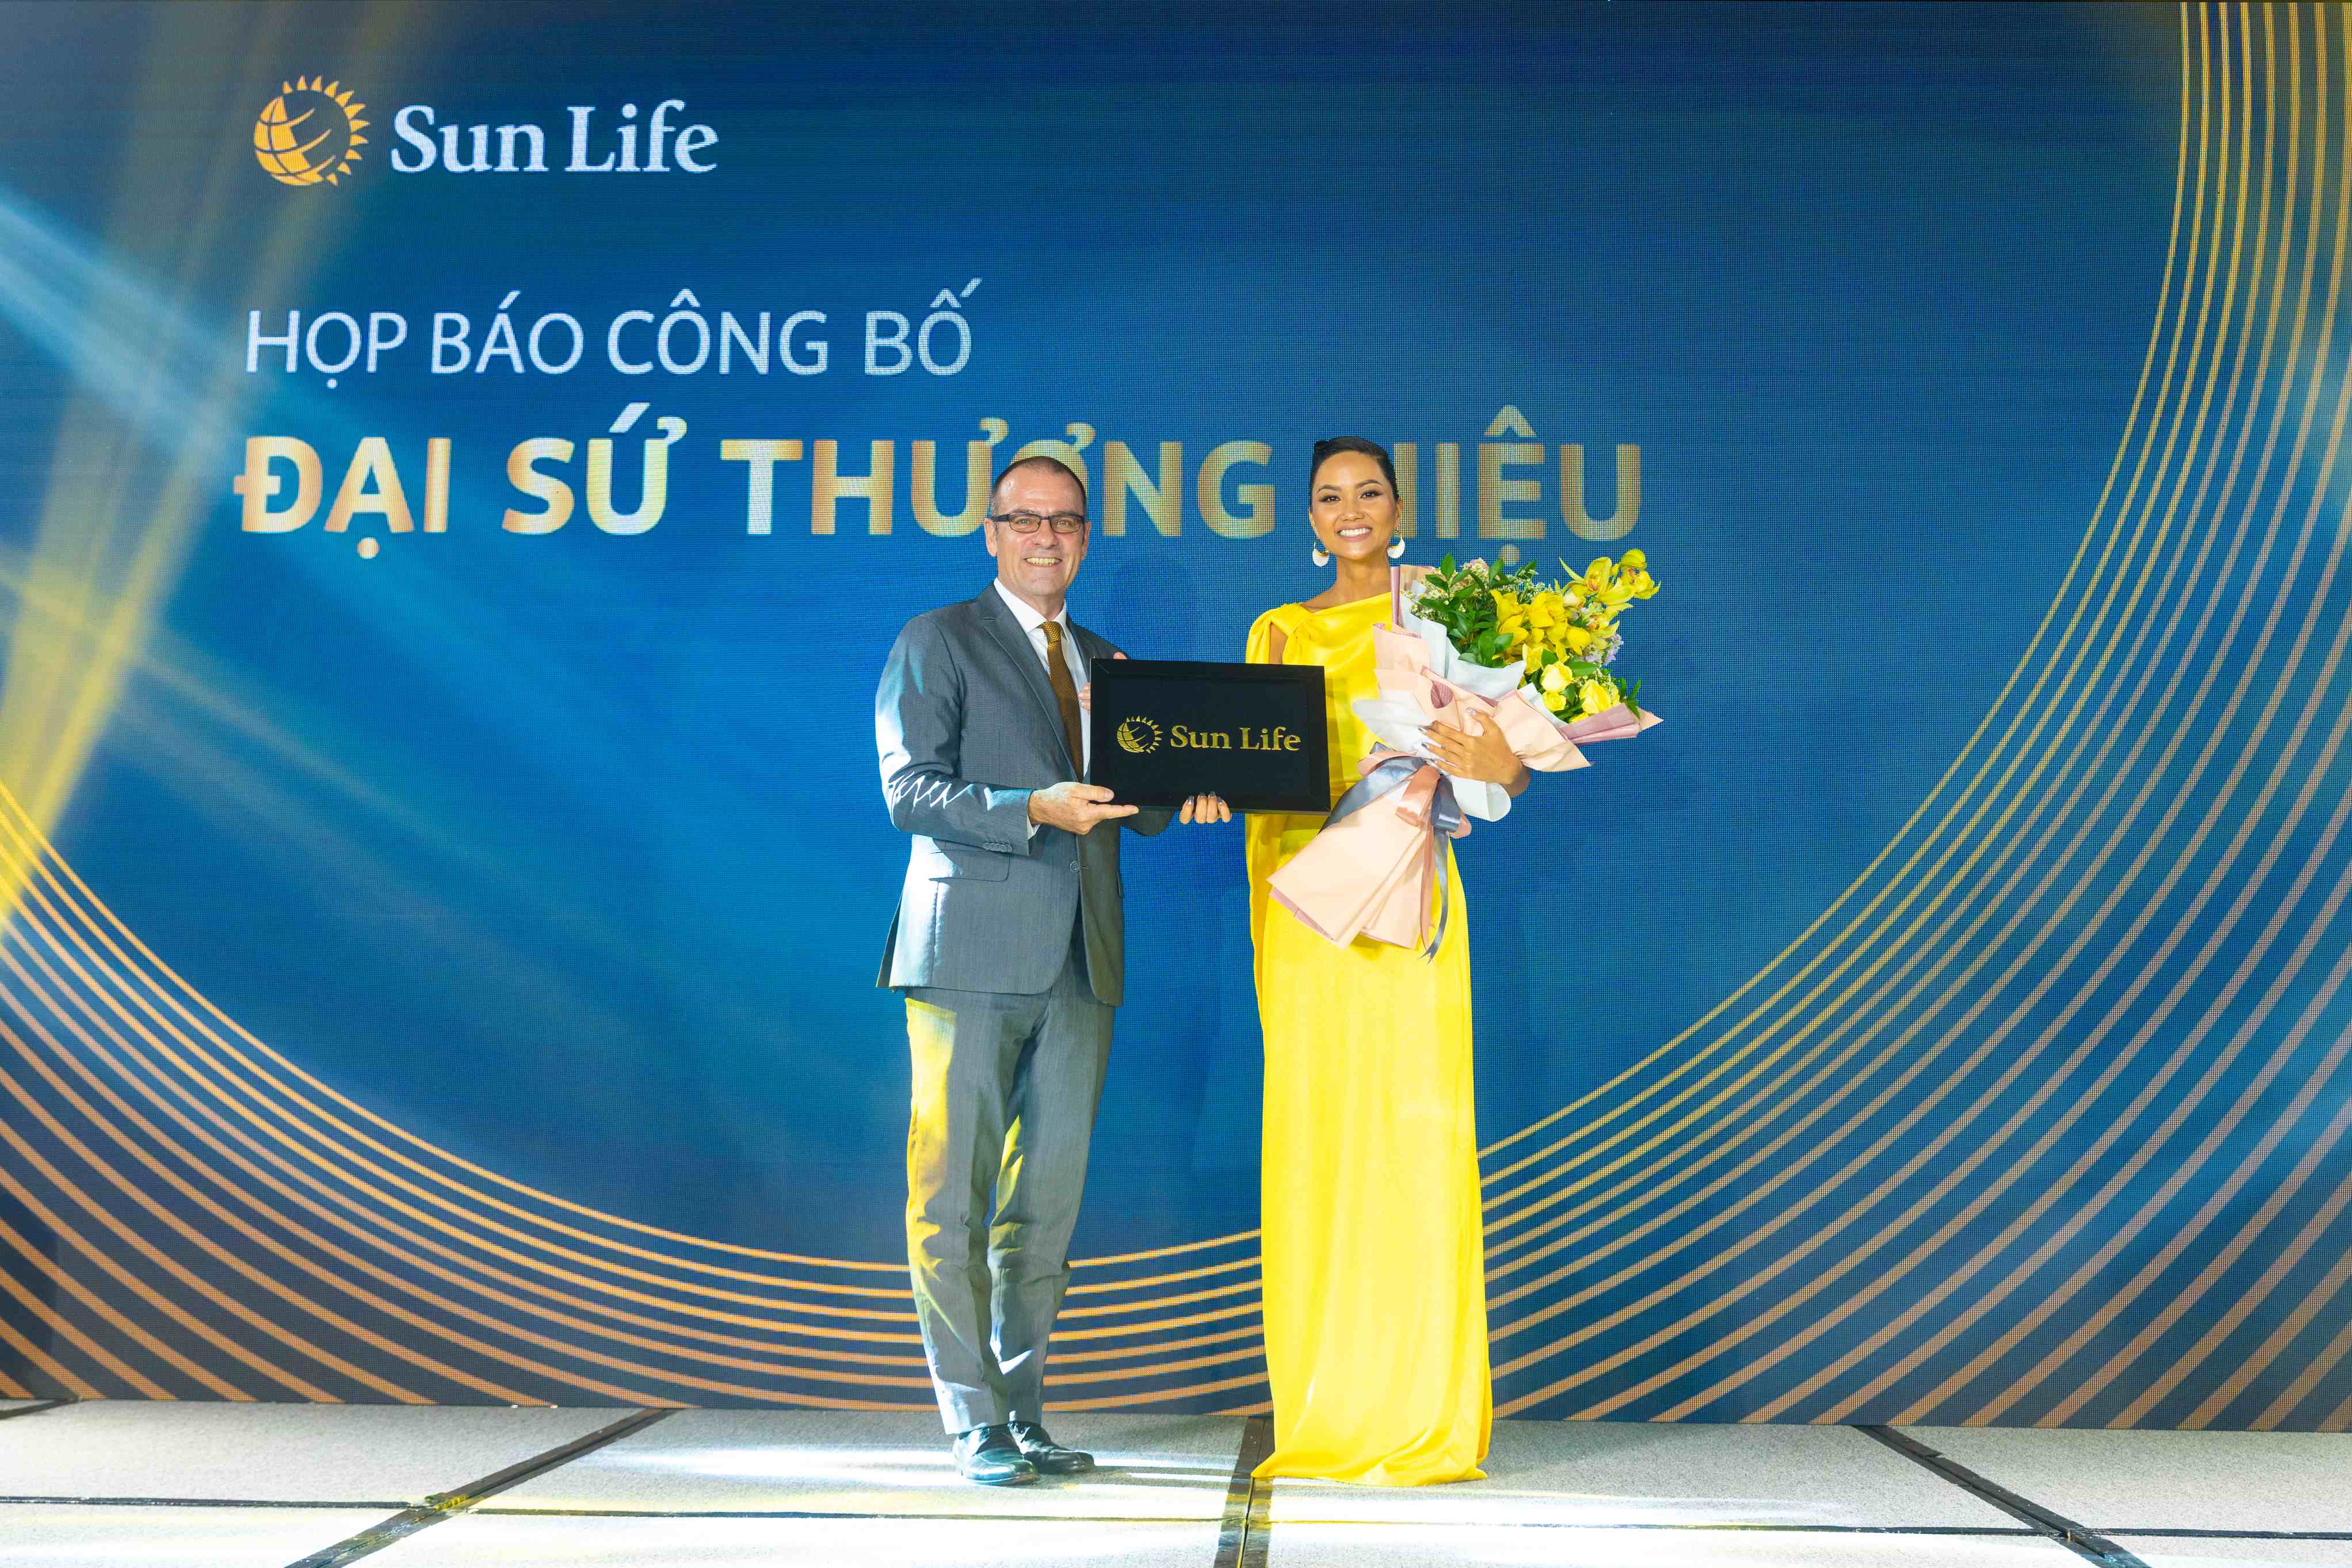 Bảo hiểm nhân thọ Sun Life Việt Nam công bố Hoa hậu H'Hen Niê là đại sứ thương hiệu